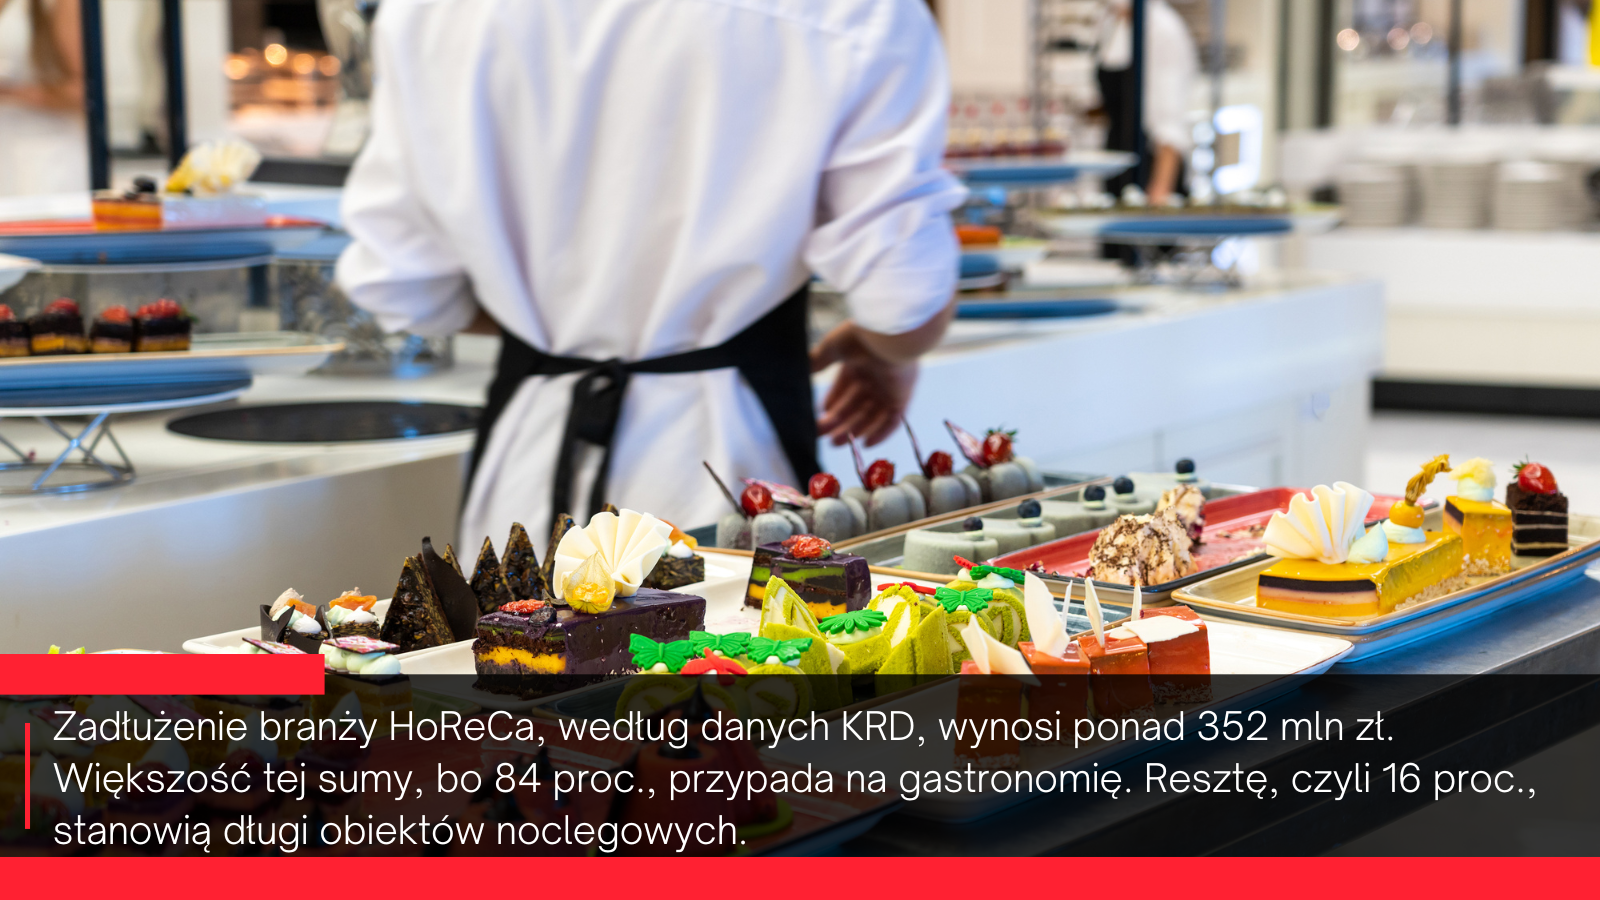 HoReCa-–-gastronomia-z-problemami-a-hotele-w-lepszej-kondycji.png